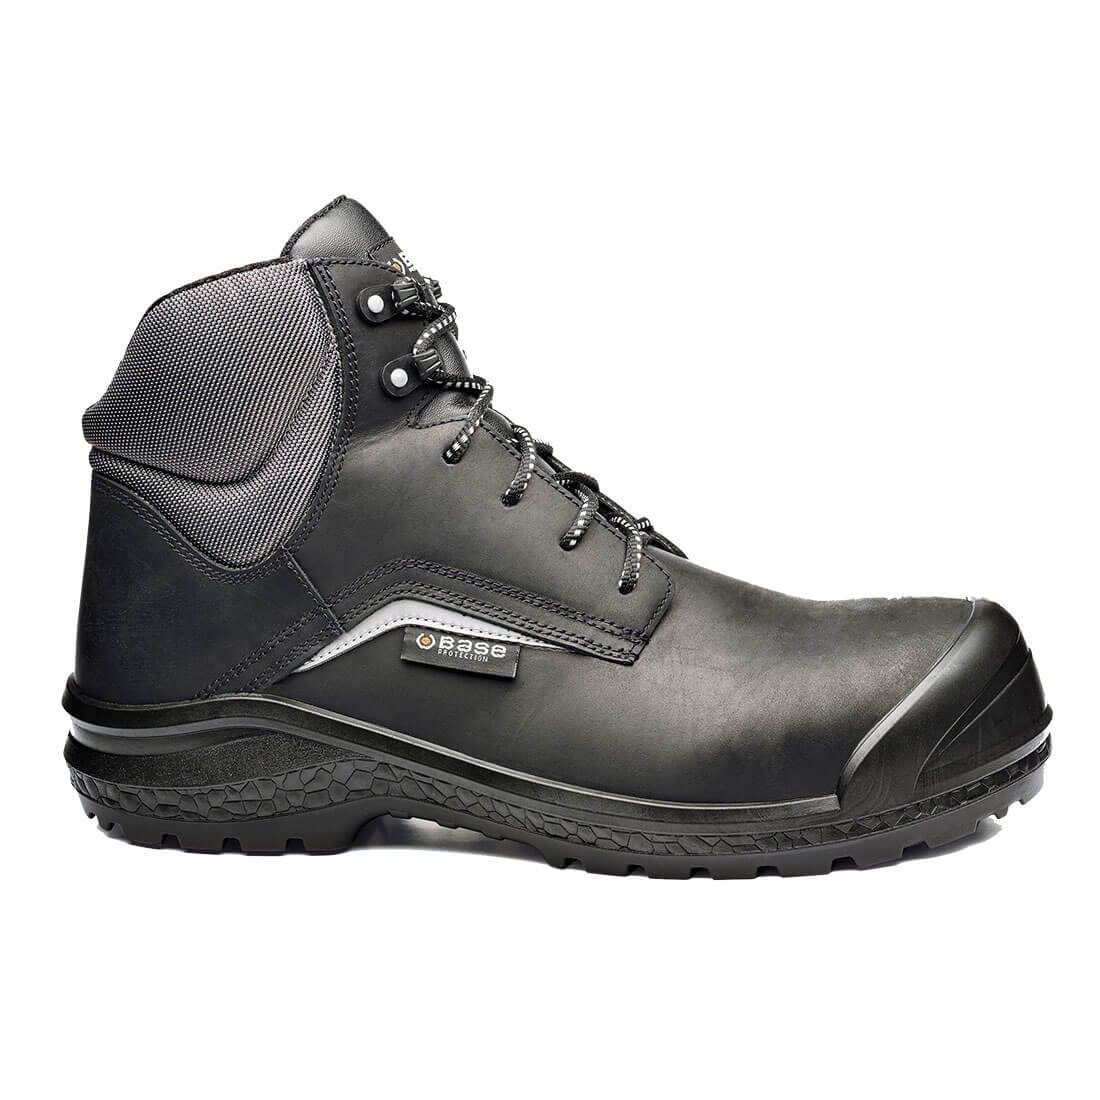 Base Footwear Sicherheitsschuhe B0883C - Be Grey Mid S3 CI SRC Schutzkappe Sicherheitsschuh wasserabweisend, rutschhemmend, antistatisch, Schutzkappe, metallfrei